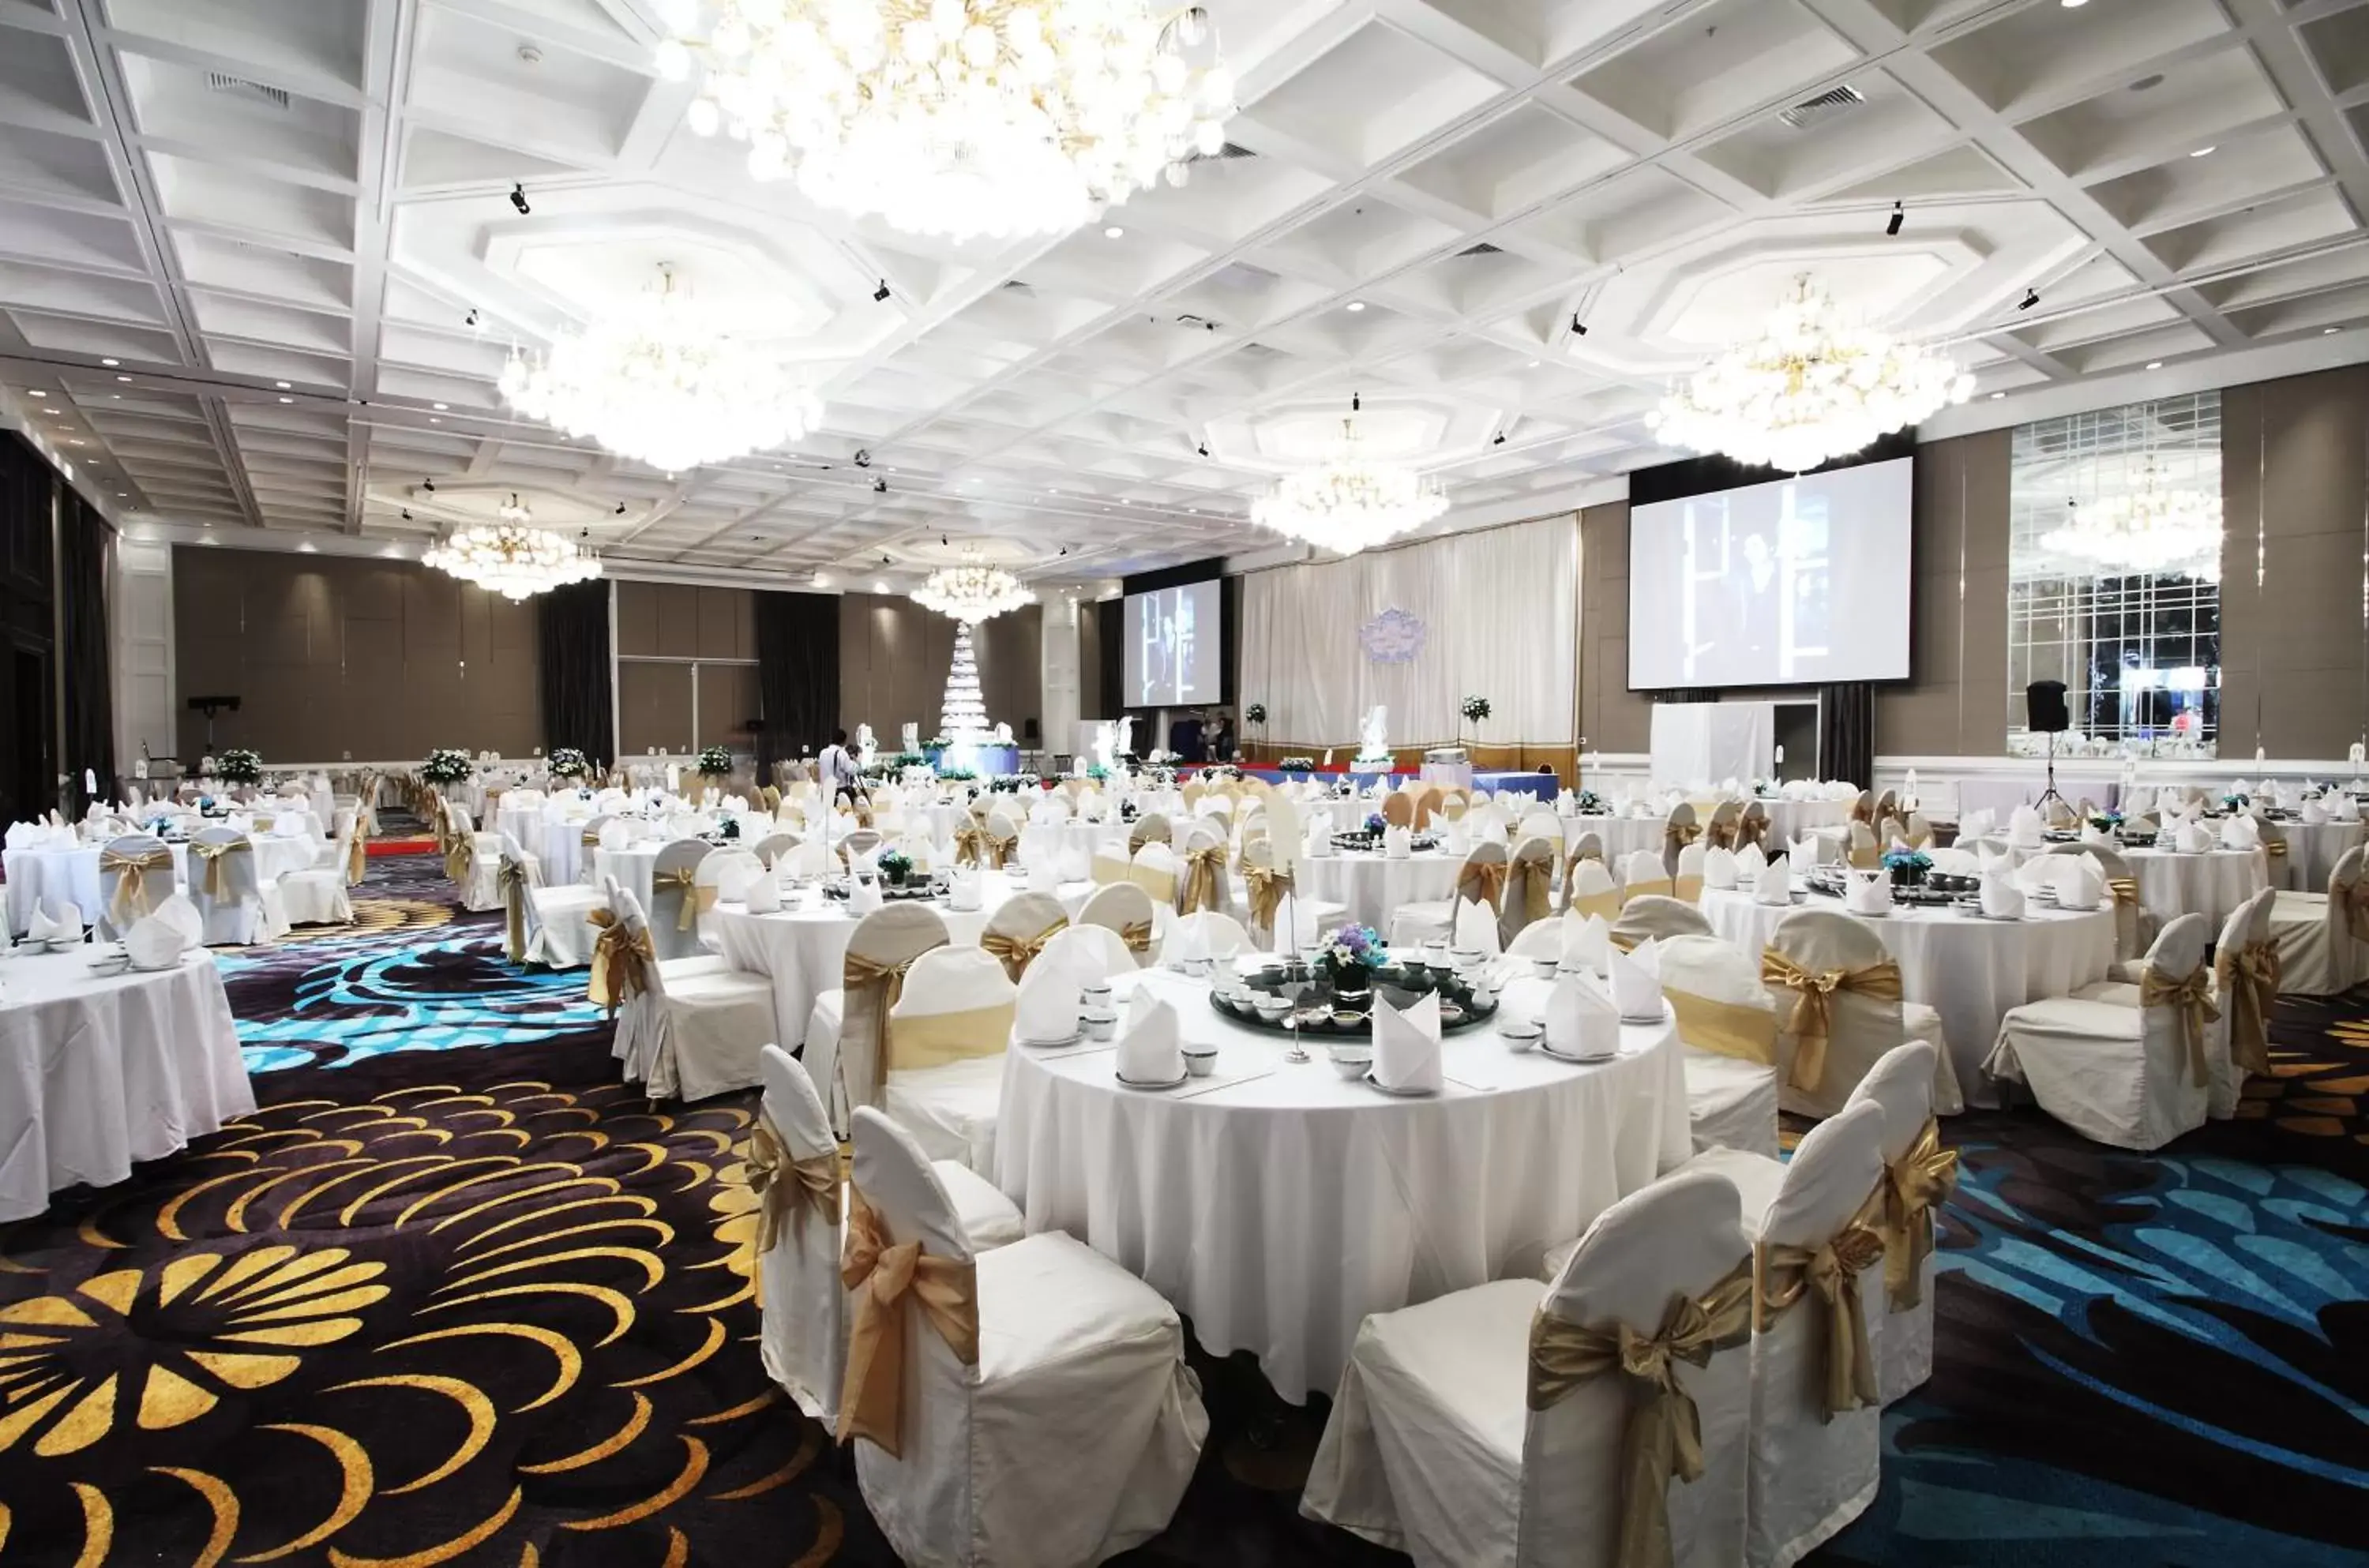 Banquet/Function facilities, Banquet Facilities in Centara Grand at Central Plaza Ladprao Bangkok